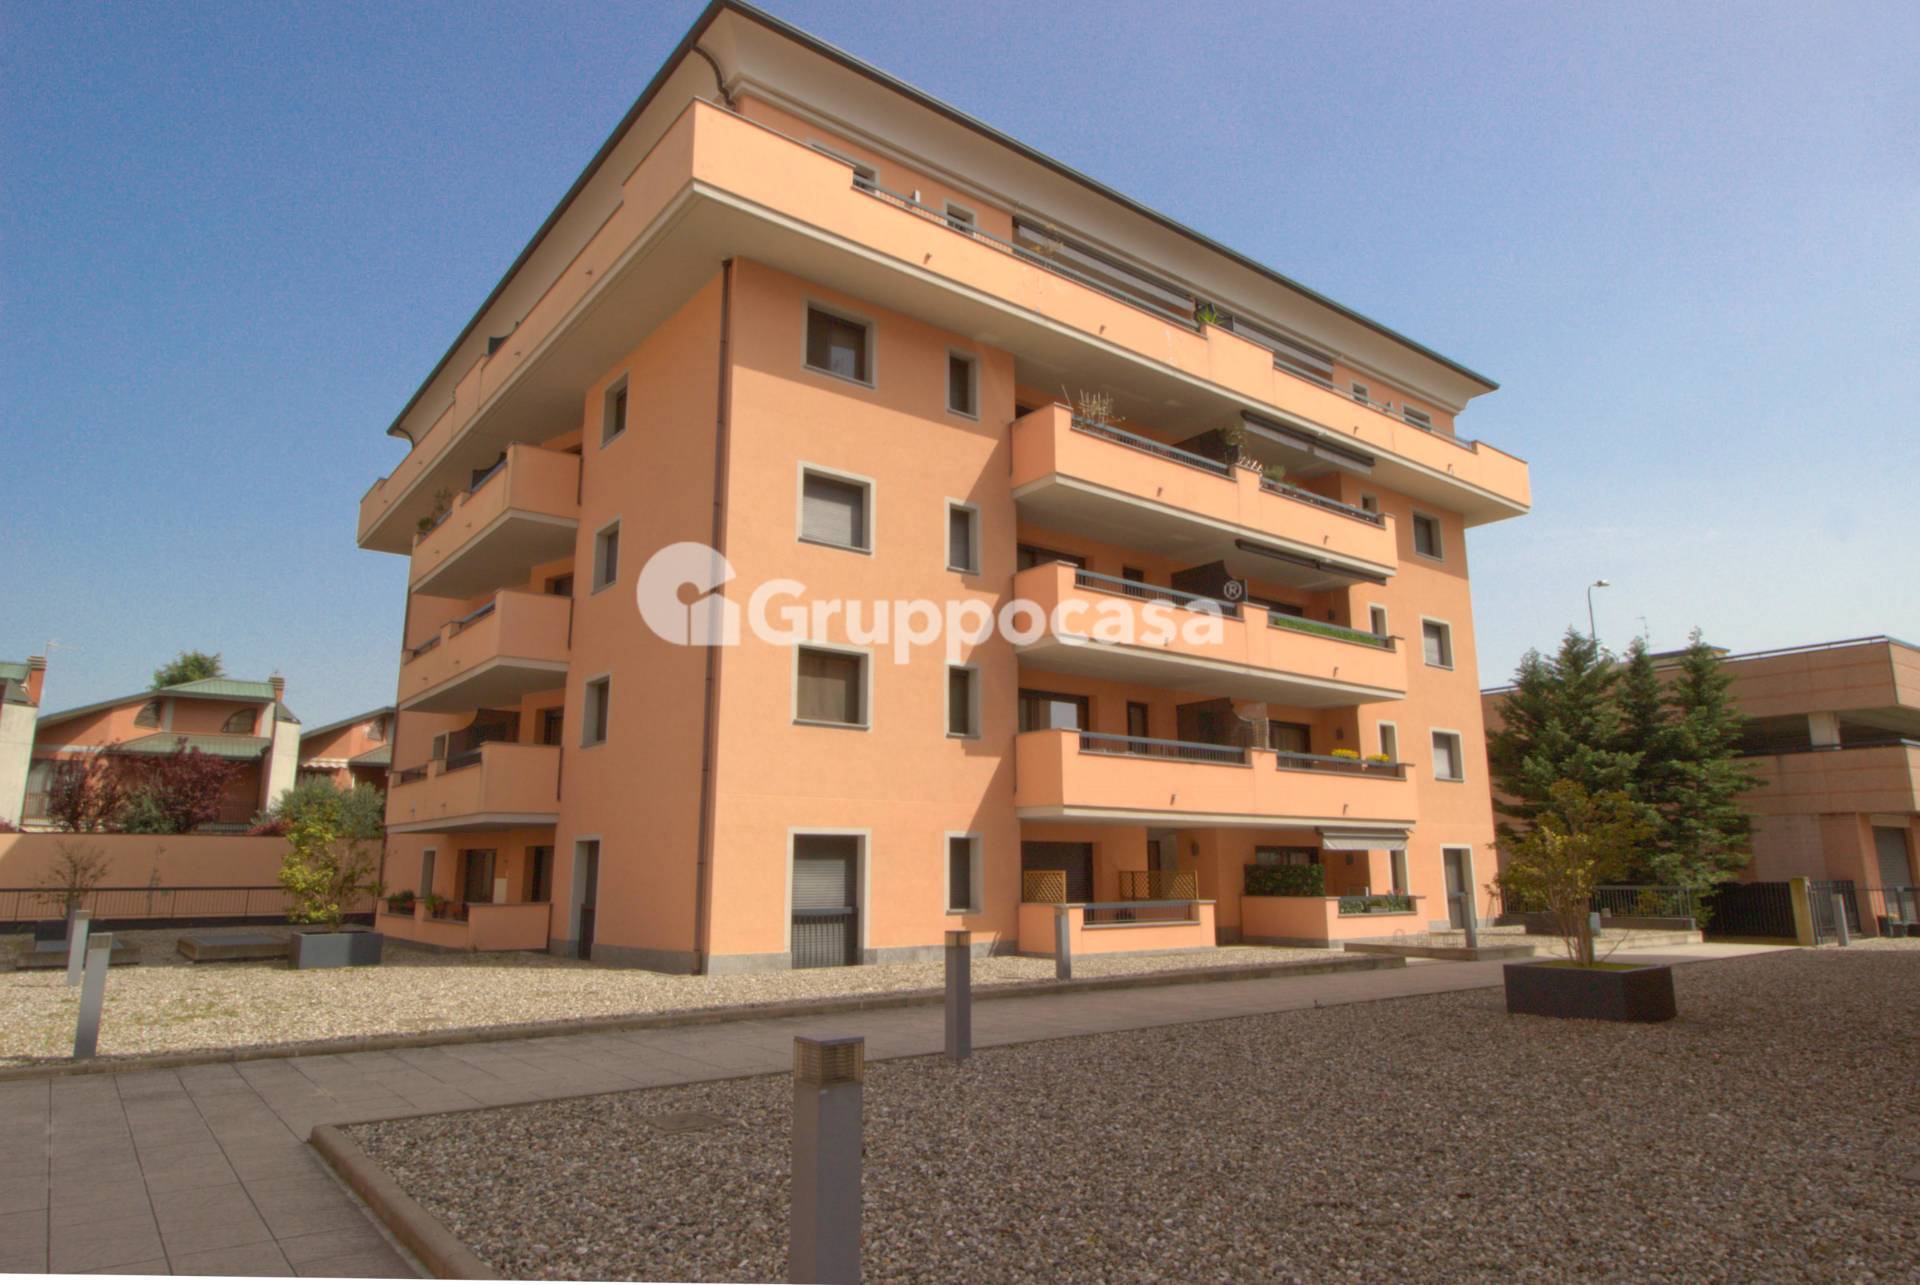 Appartamento in vendita a Magenta, 4 locali, prezzo € 295.000 | PortaleAgenzieImmobiliari.it